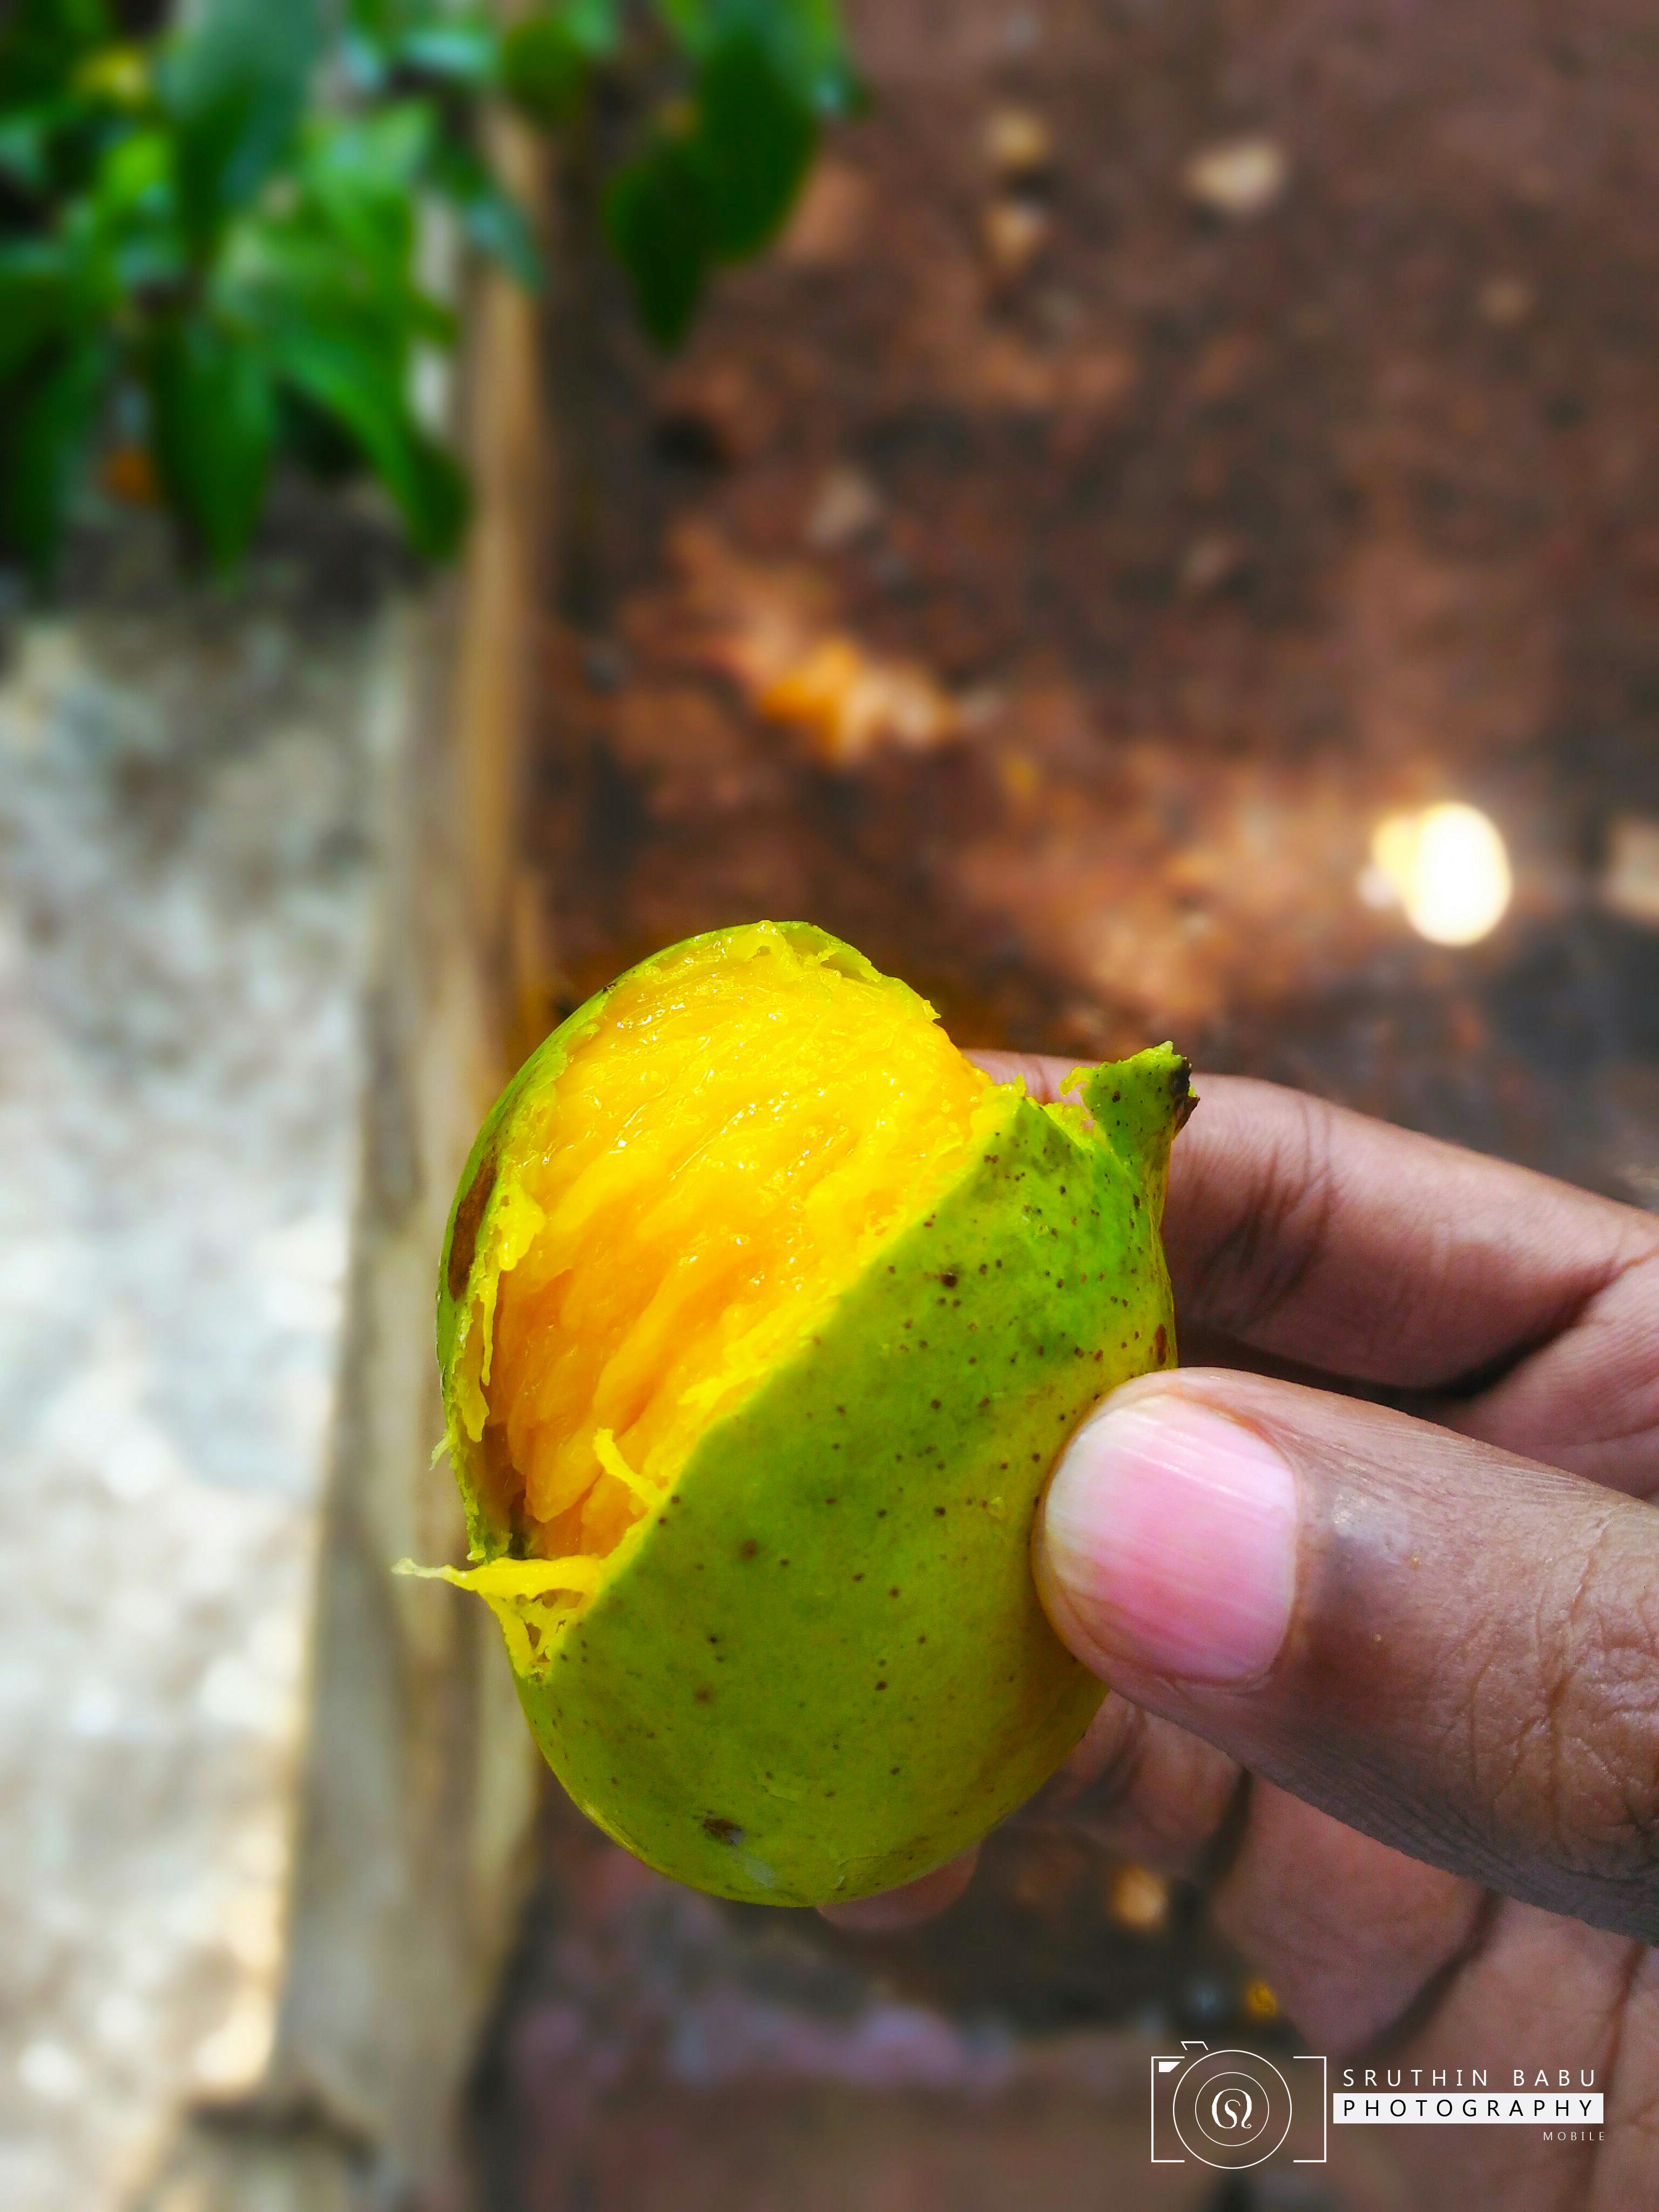 Free stock photo of Mango Fruit, mangoes, Sweet Mango